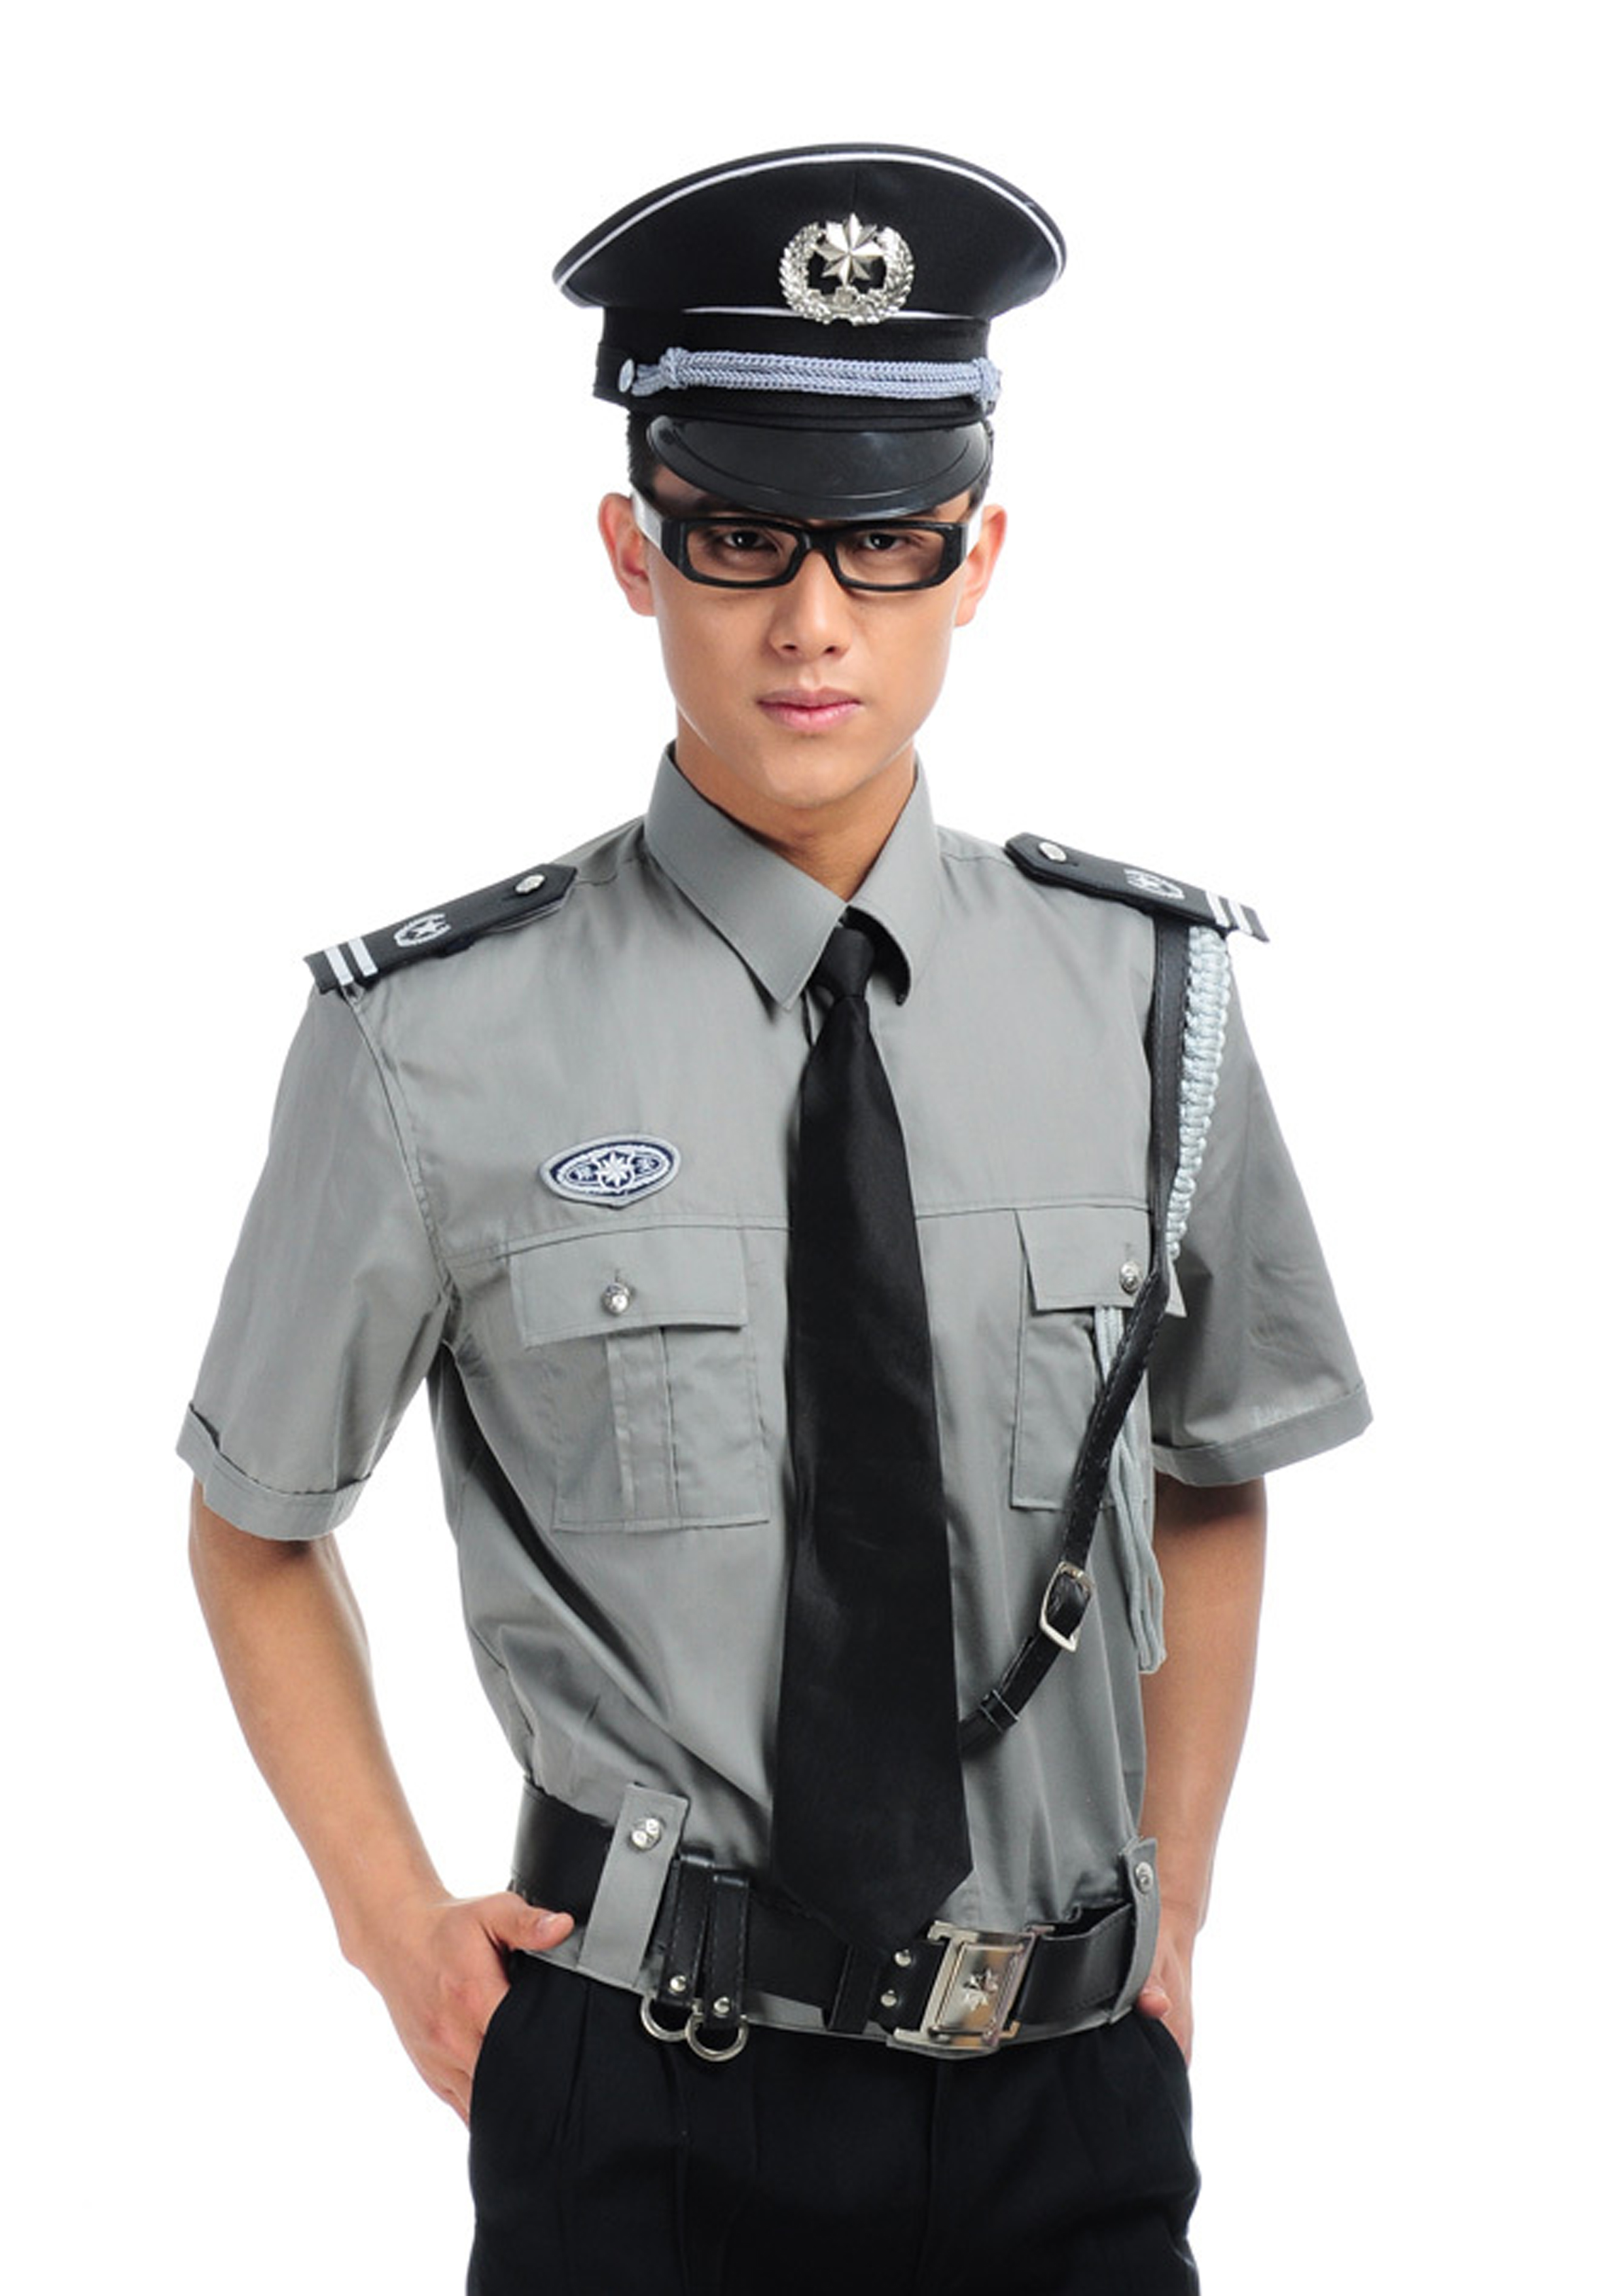 Đồng phục bảo vệ - May Thời Trang Sài Gòn - Công Ty TNHH May Thời Trang Sài Gòn